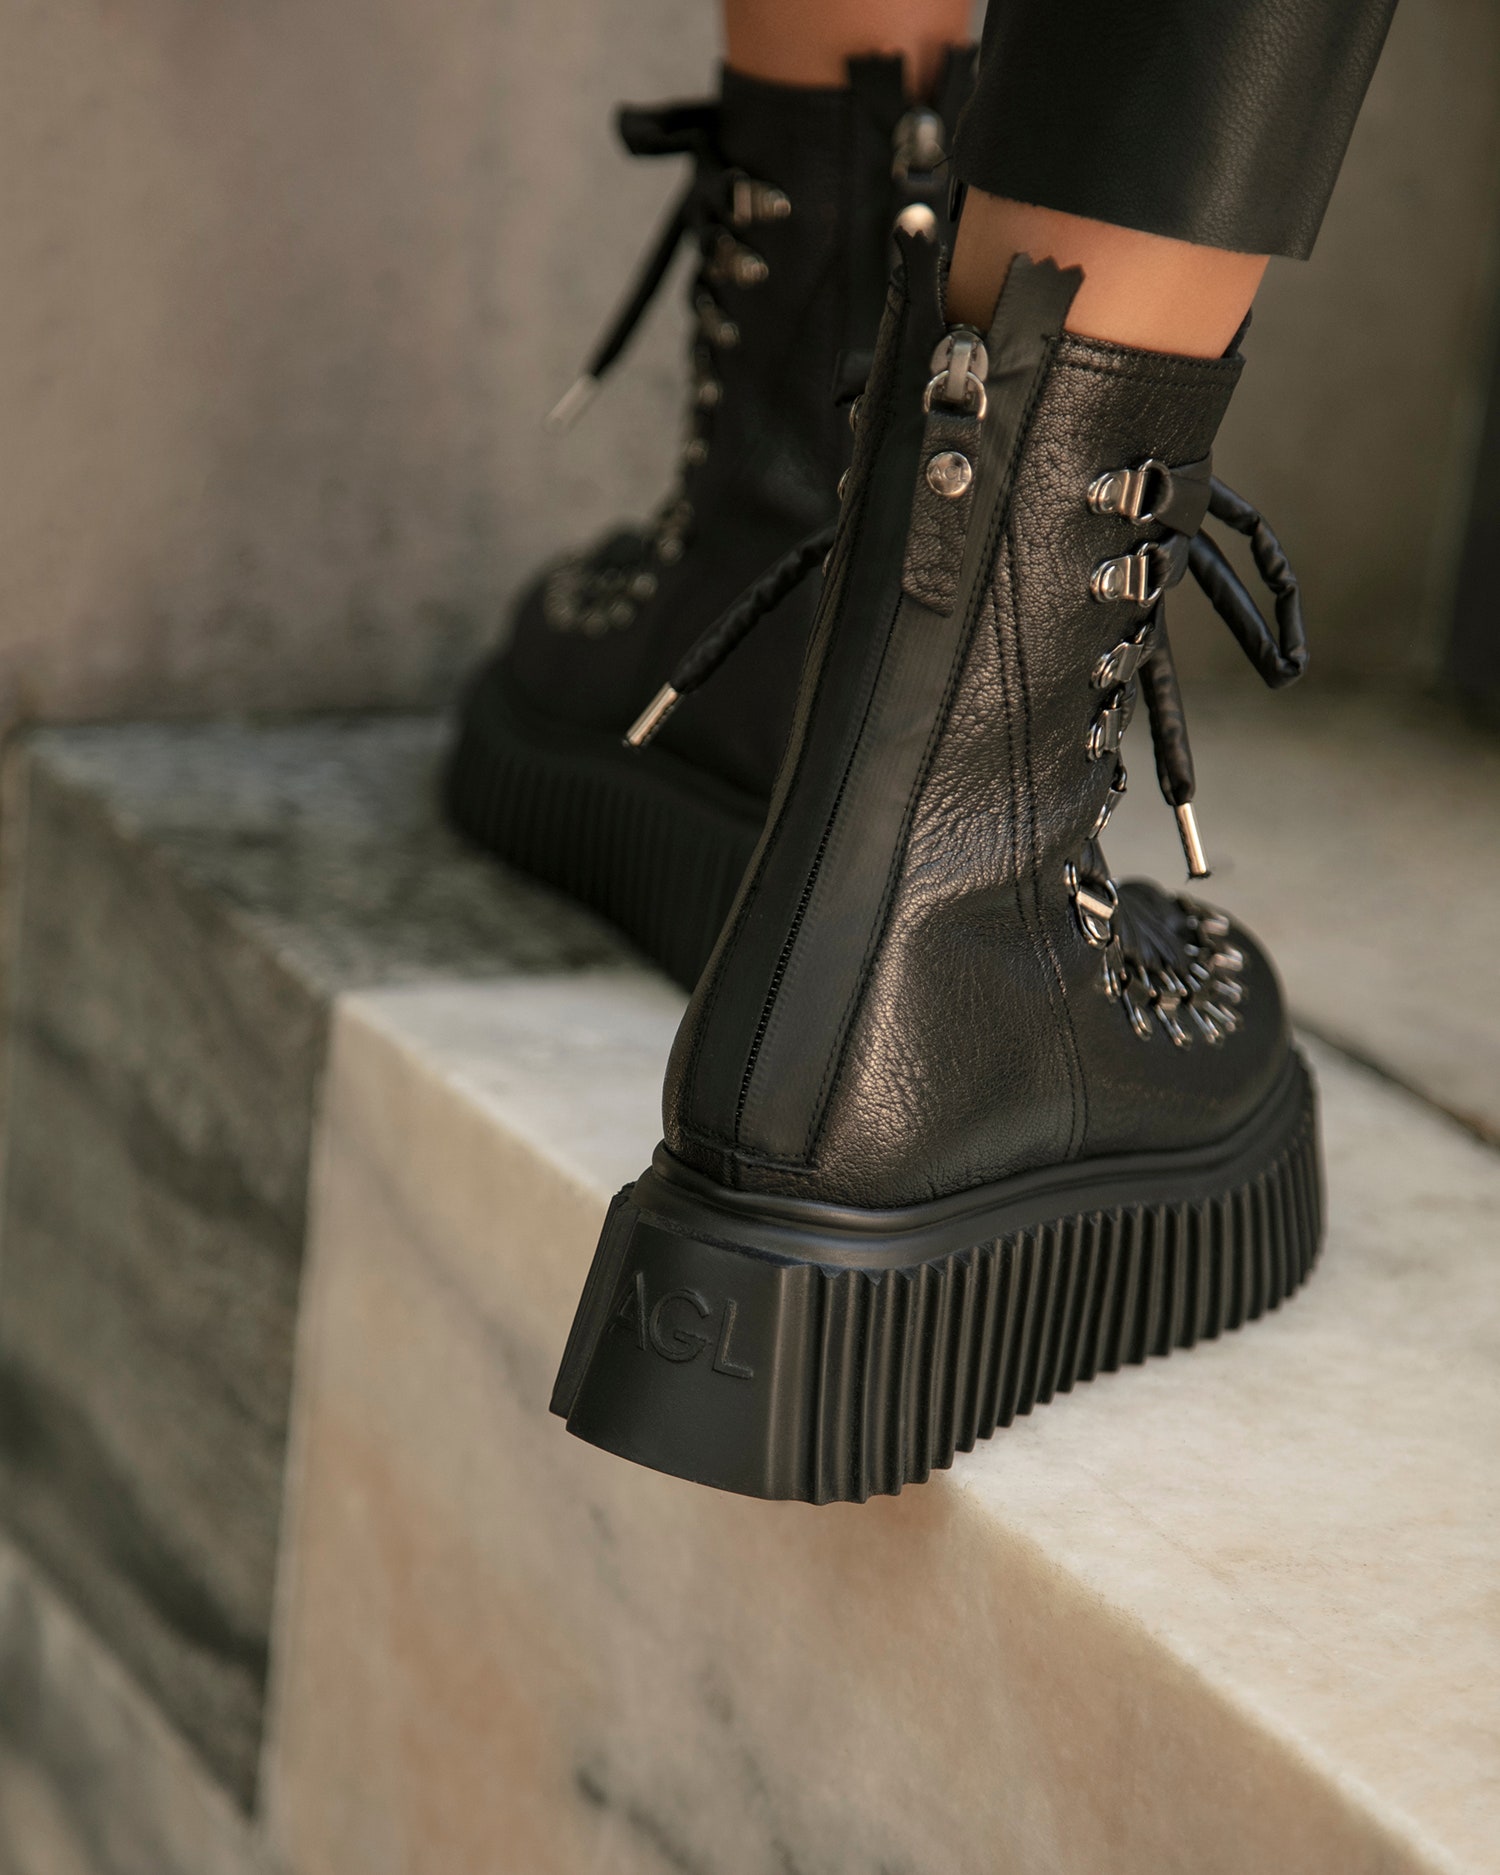 Новые брутальные высокие ботинки AGL на шнуровке в стиле гранж — новое решение итальянского бренда для базового...